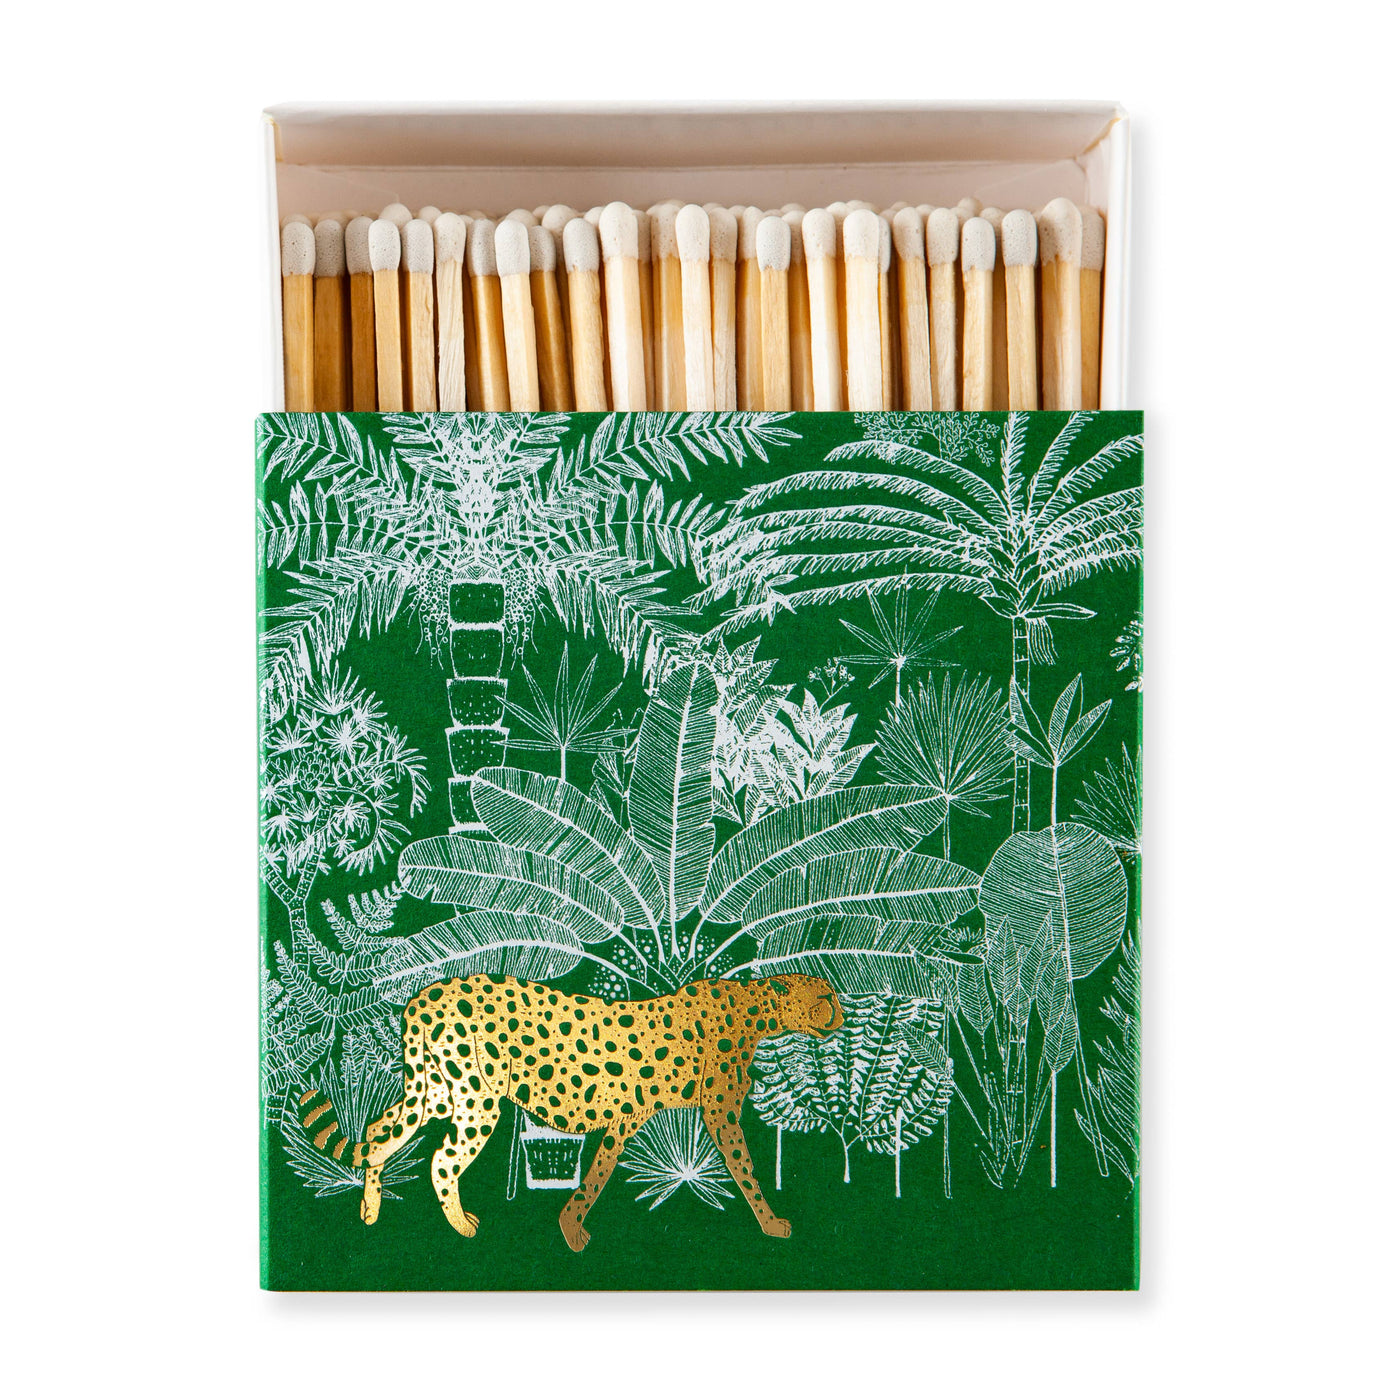 Cheetah in Jungle Matchbox in Green